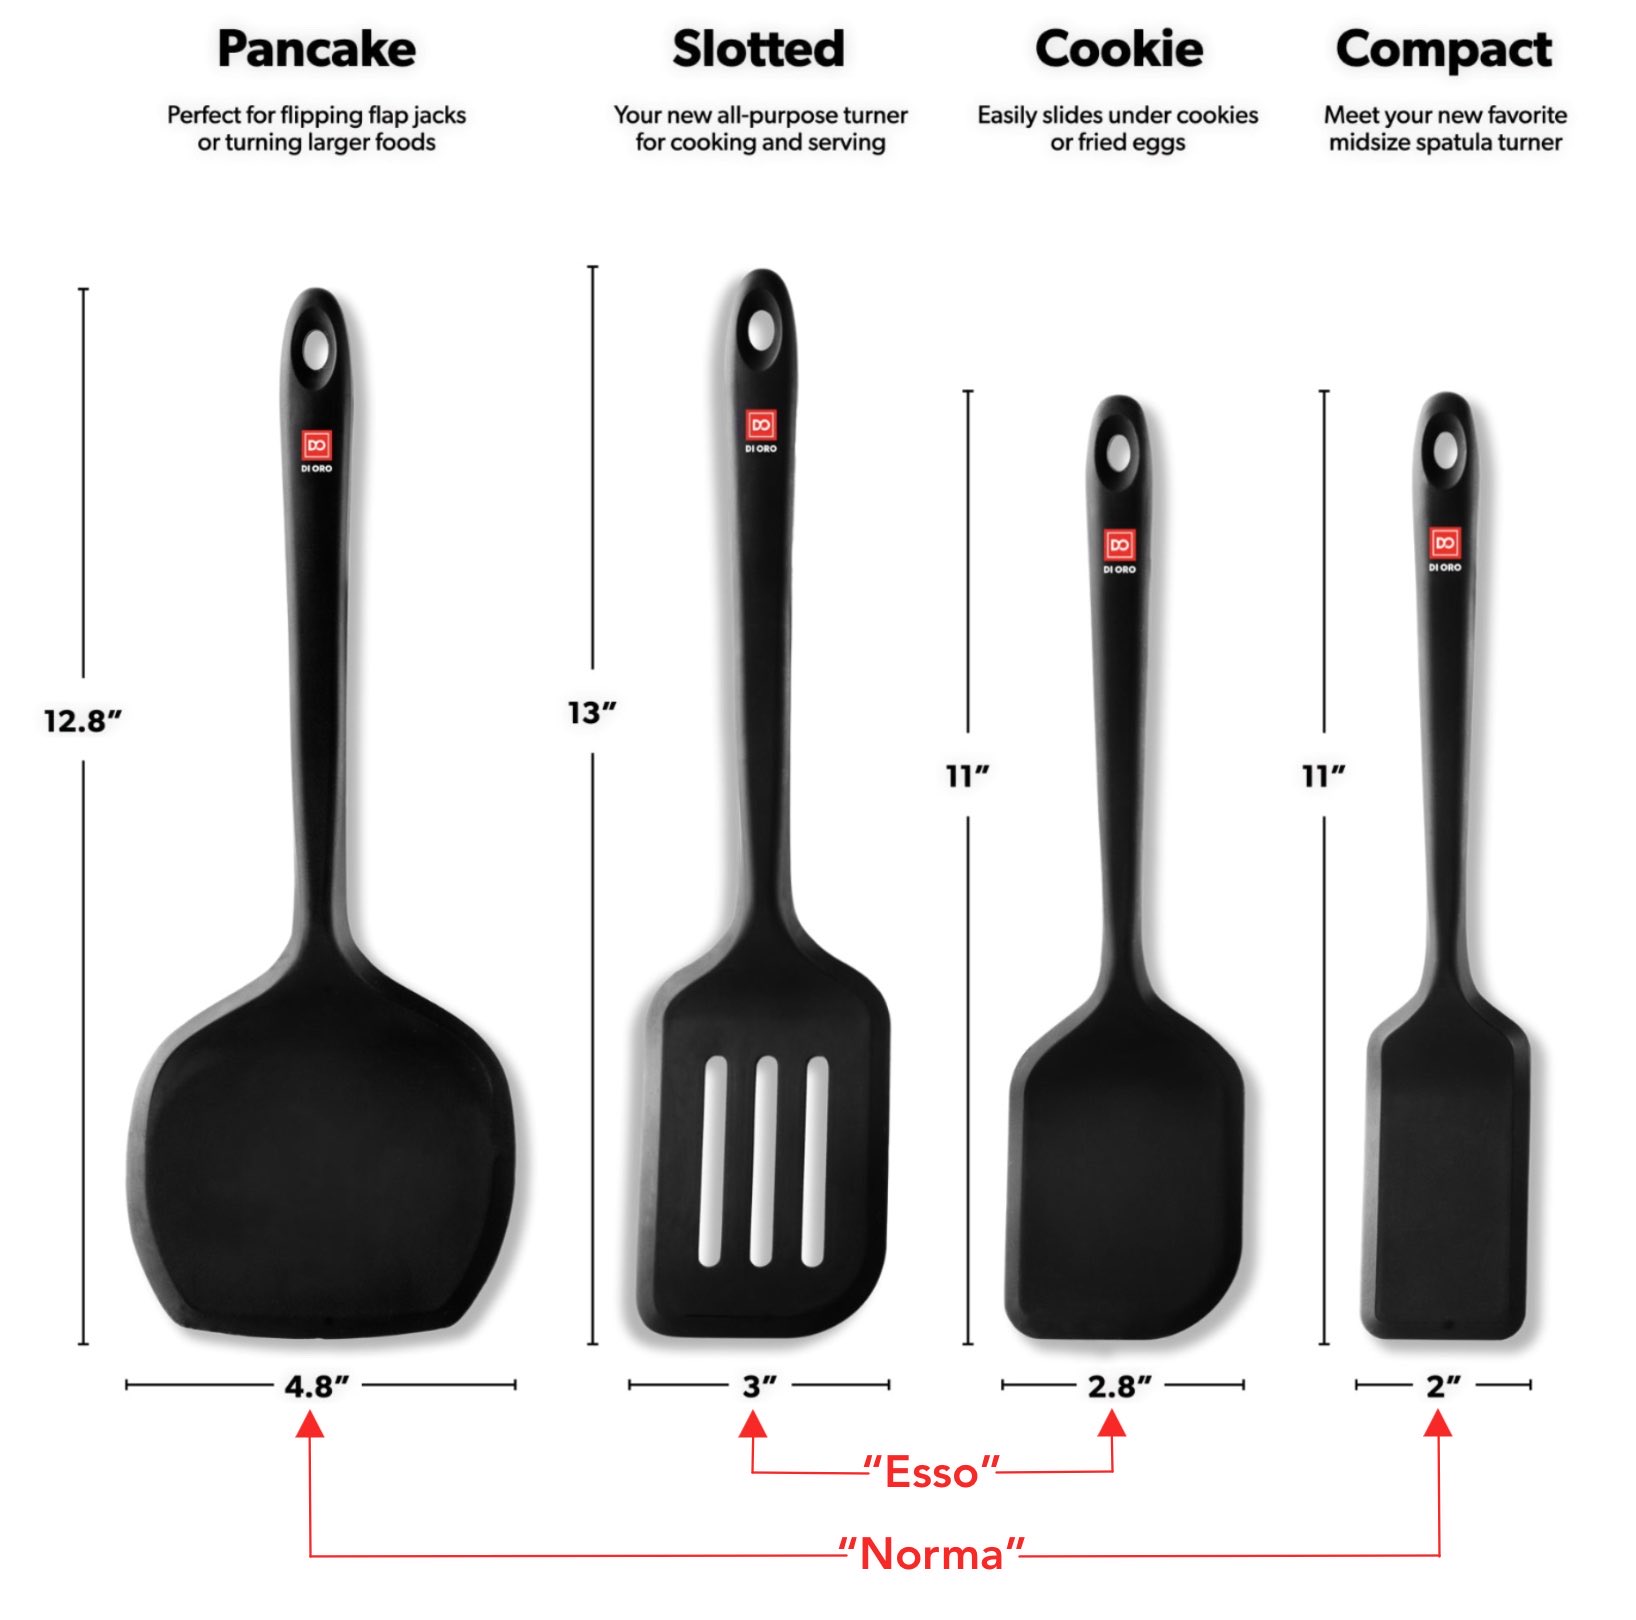 di-oro-esso-and-forma-seamless-silicone-turner-spatula-sets-comparison-chart